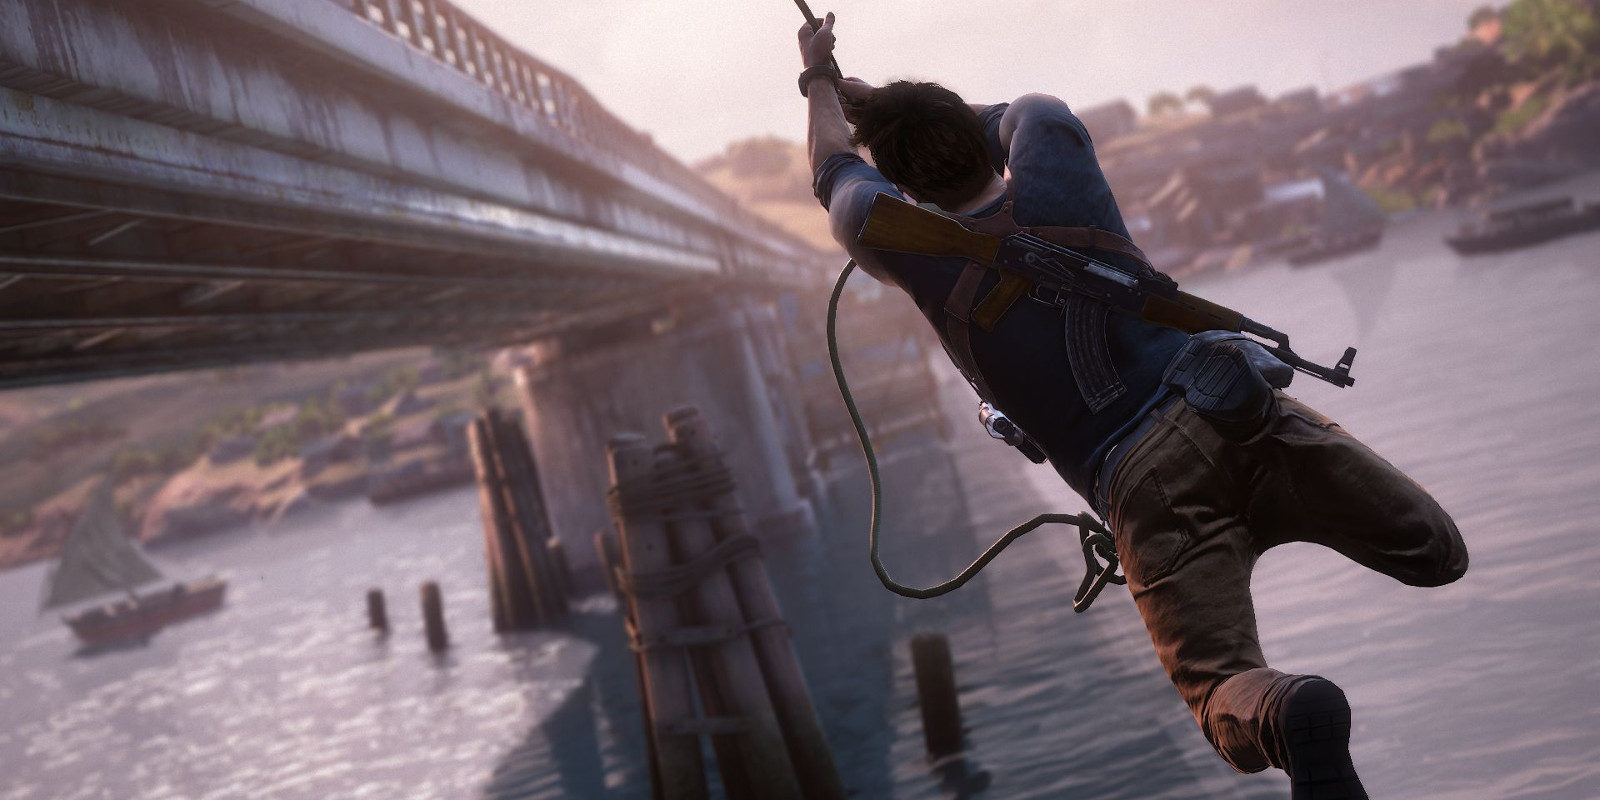 Análisis de 'Uncharted 4: A Thief's End' (PS4), la mayor aventura de nuestra vida